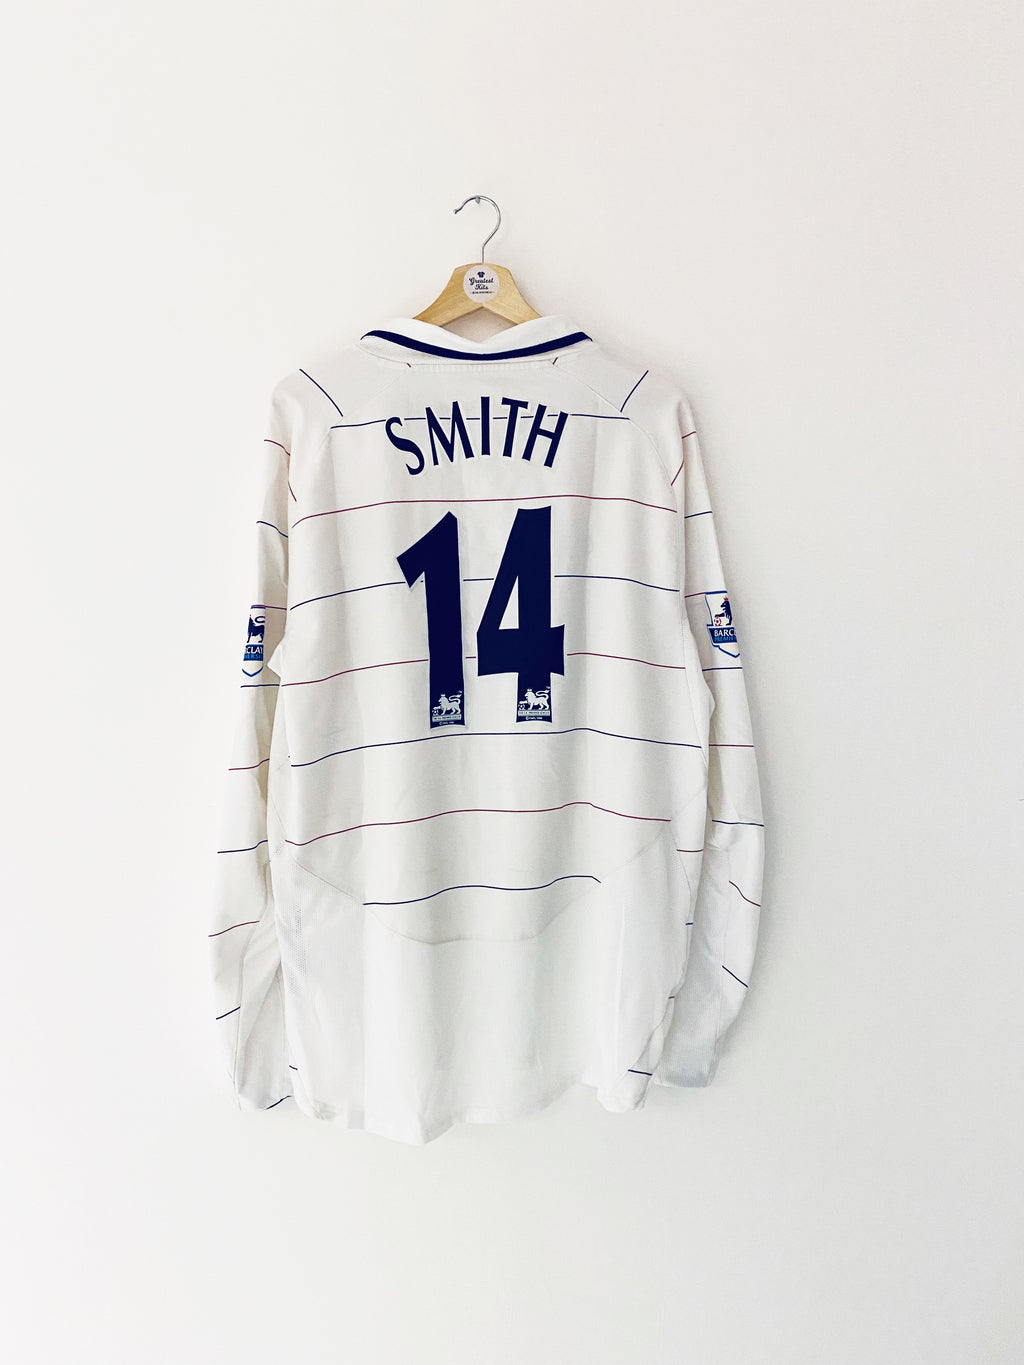 2004/05 Manchester United Troisième L/S Maillot Smith #14 (XL) 9/10